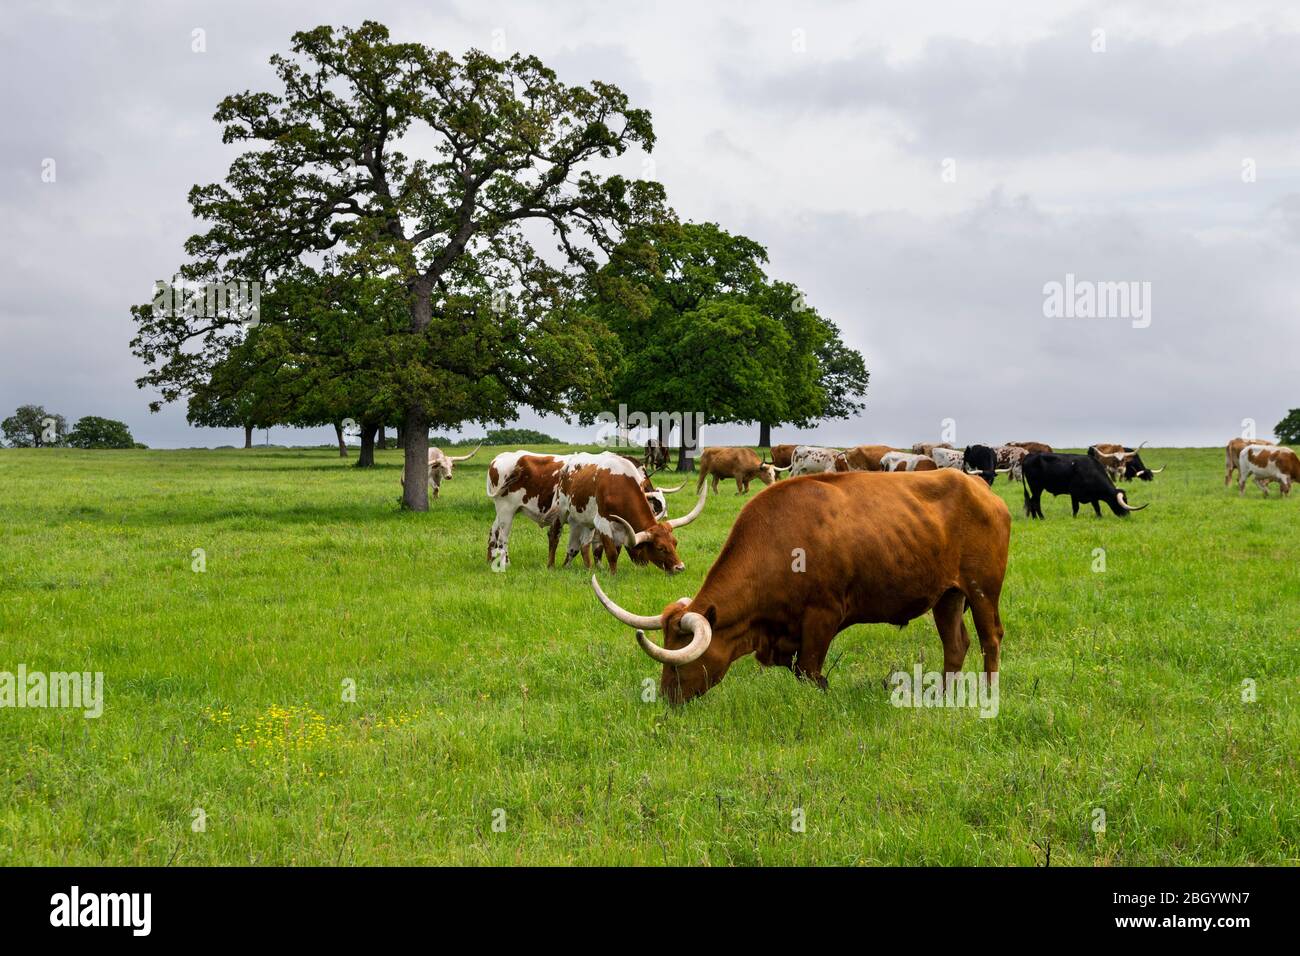 Un grosso toro di Longhorn, marrone arancio, con lunghe corna curve che pascolano sull'erba verde e rigogliosa mentre altri bovini pascolano nel pascolo dietro di lui. Foto Stock